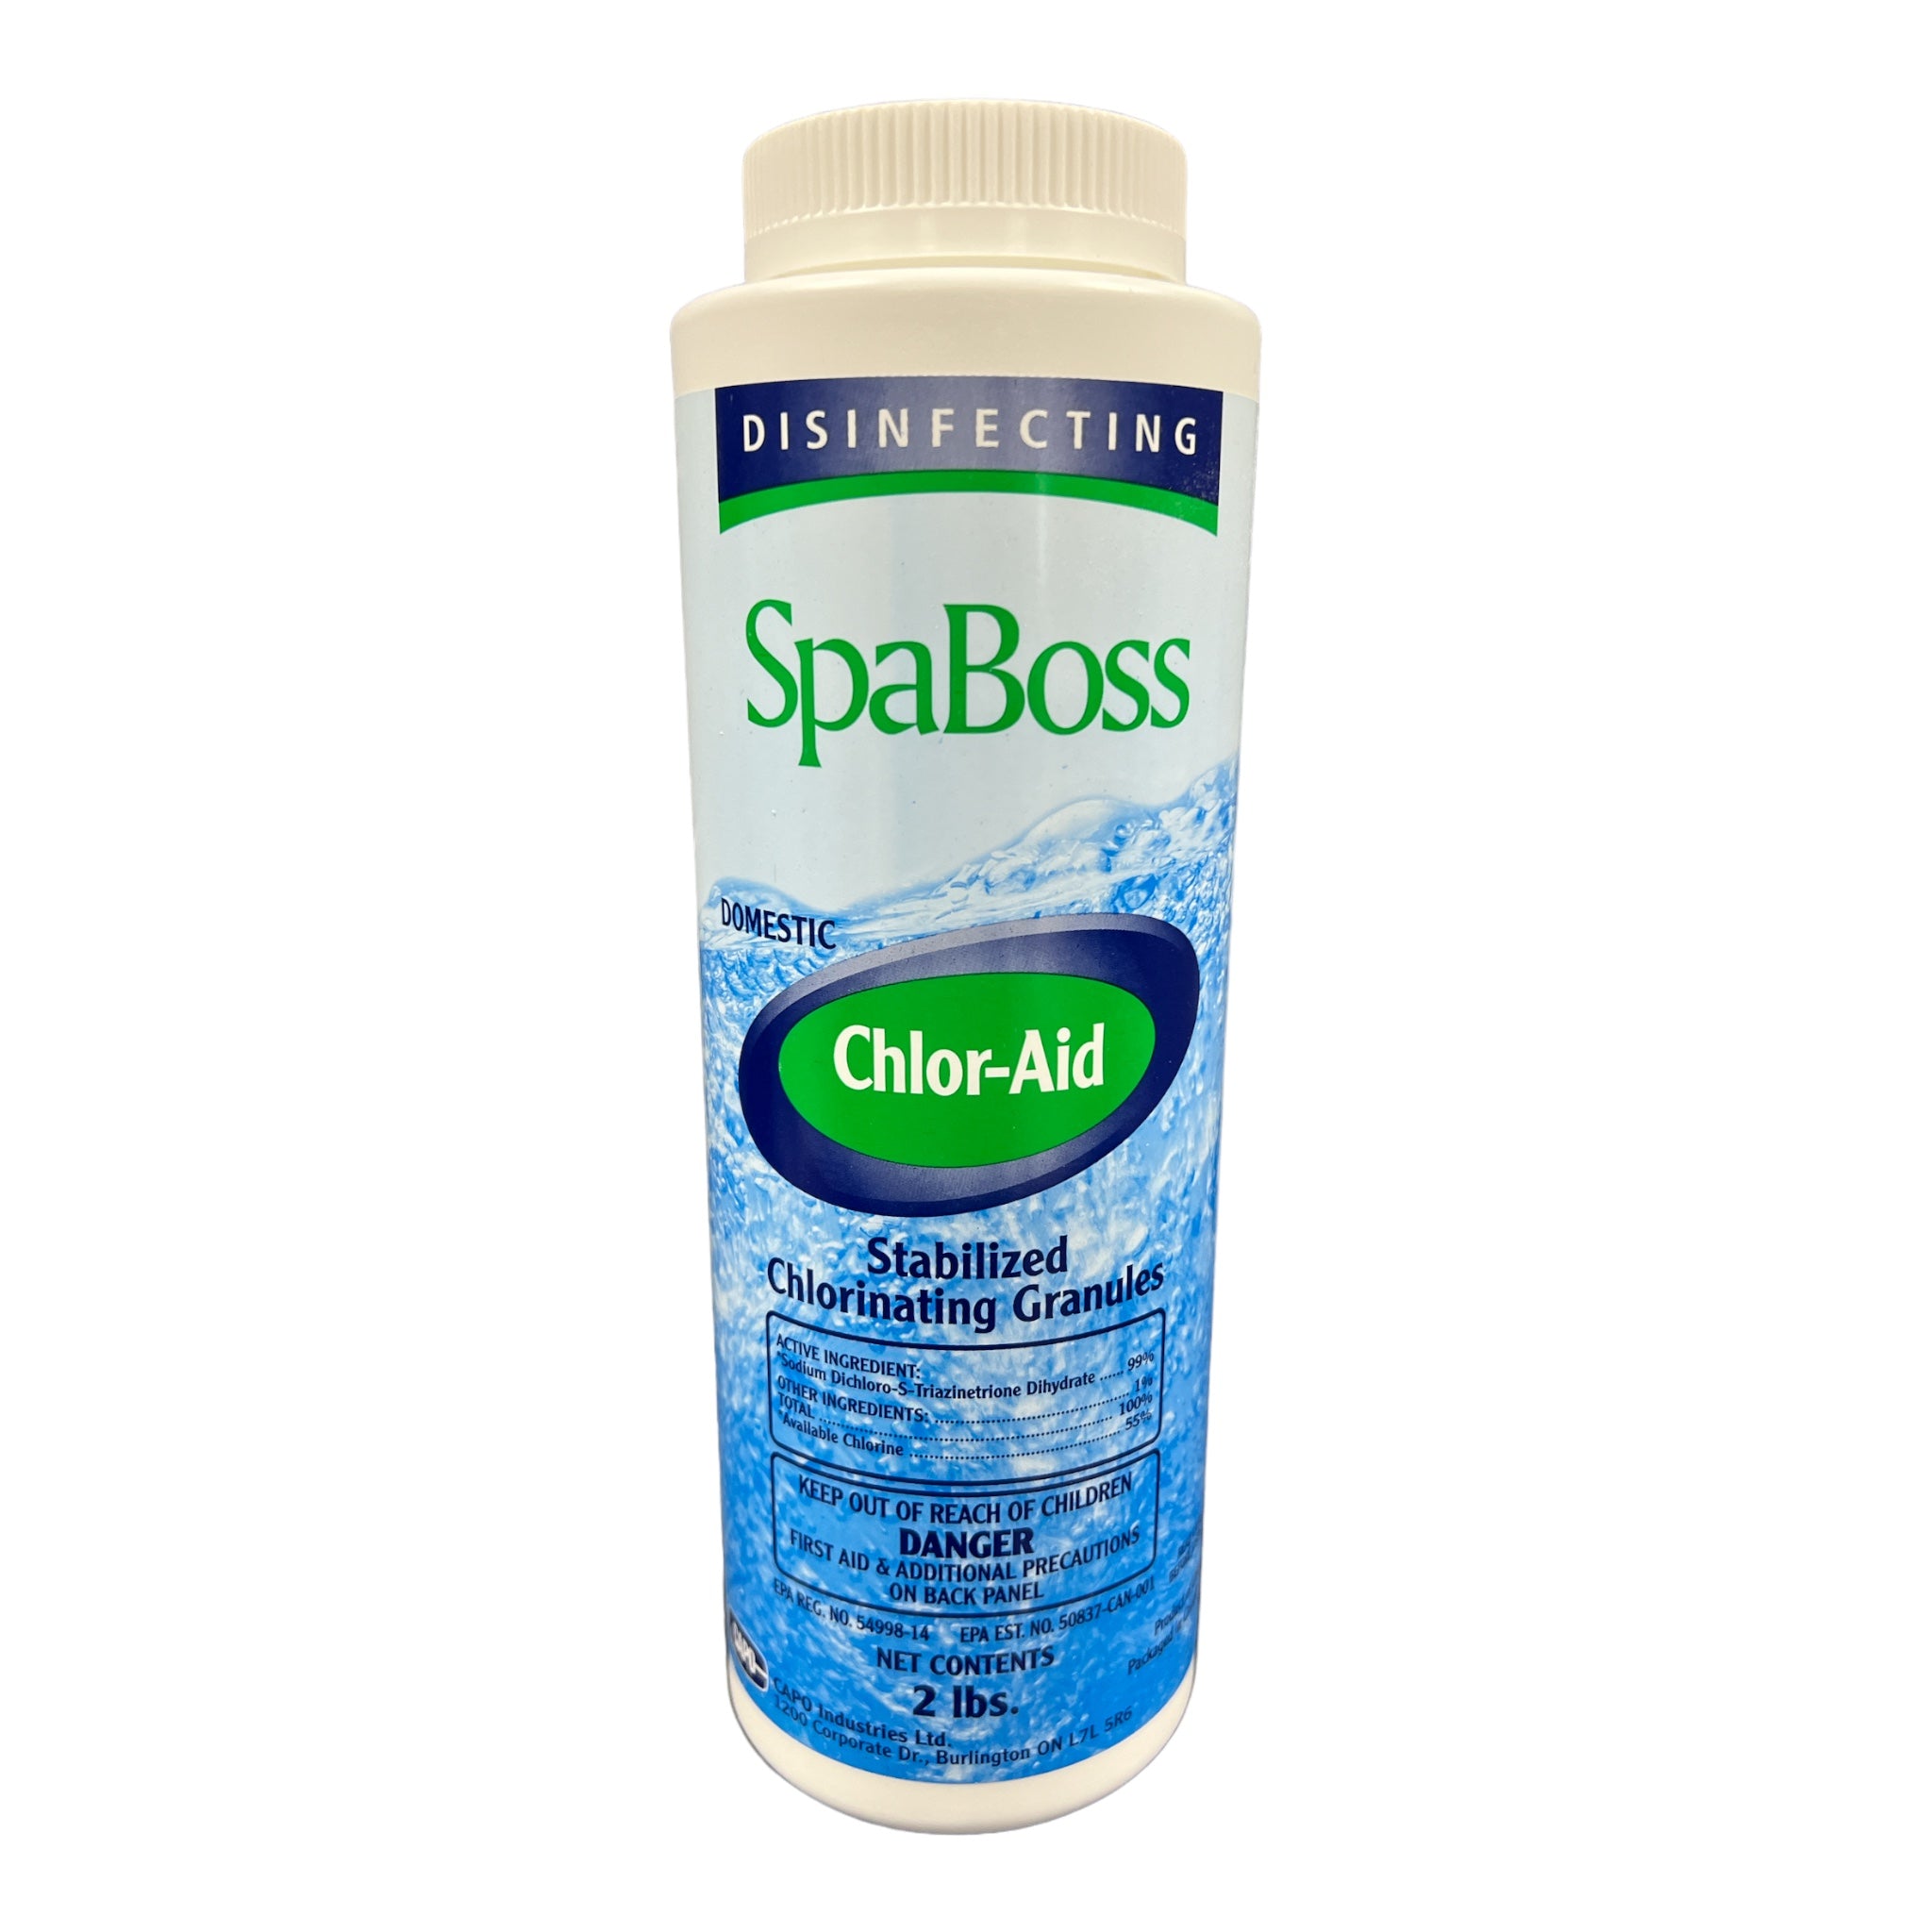 SpaBoss Chlor-Aid